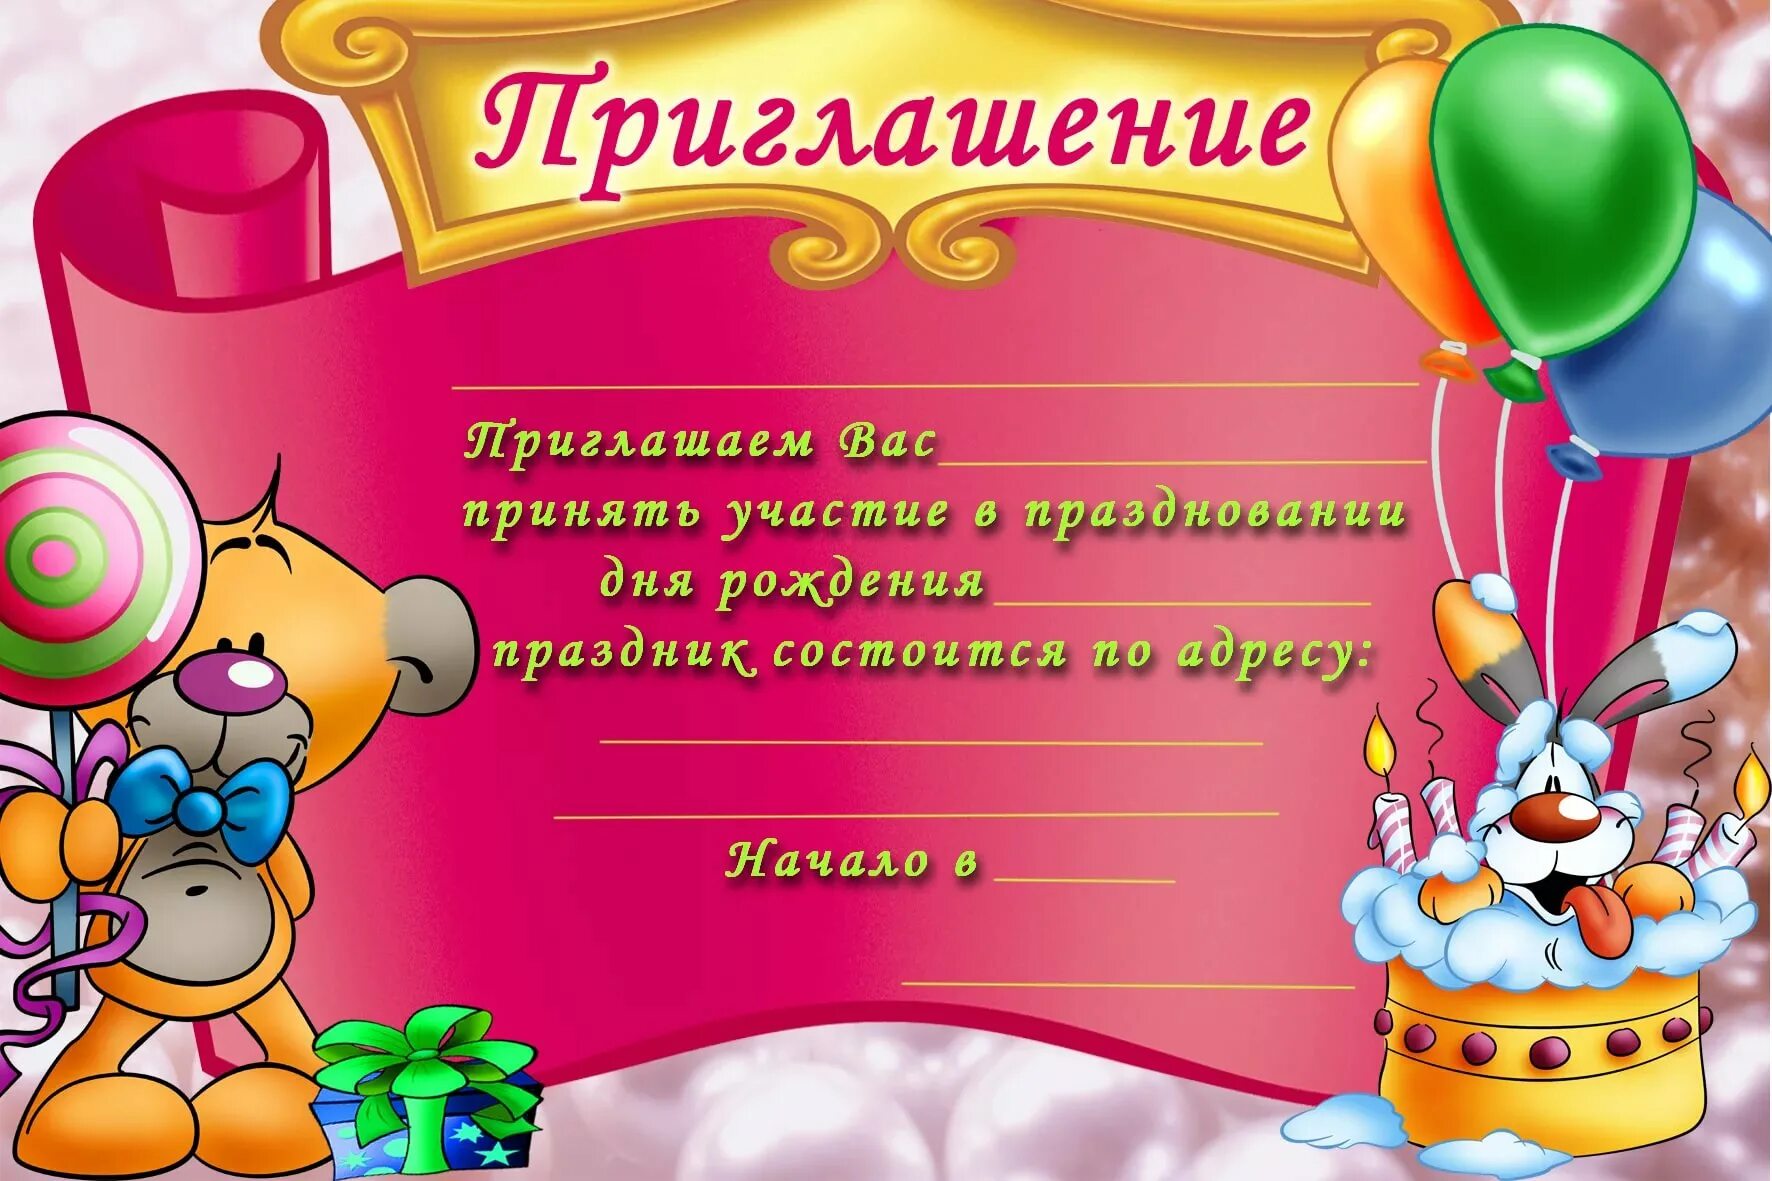 Приглашения на день рождения: шаблоны и фото - pictx.ru